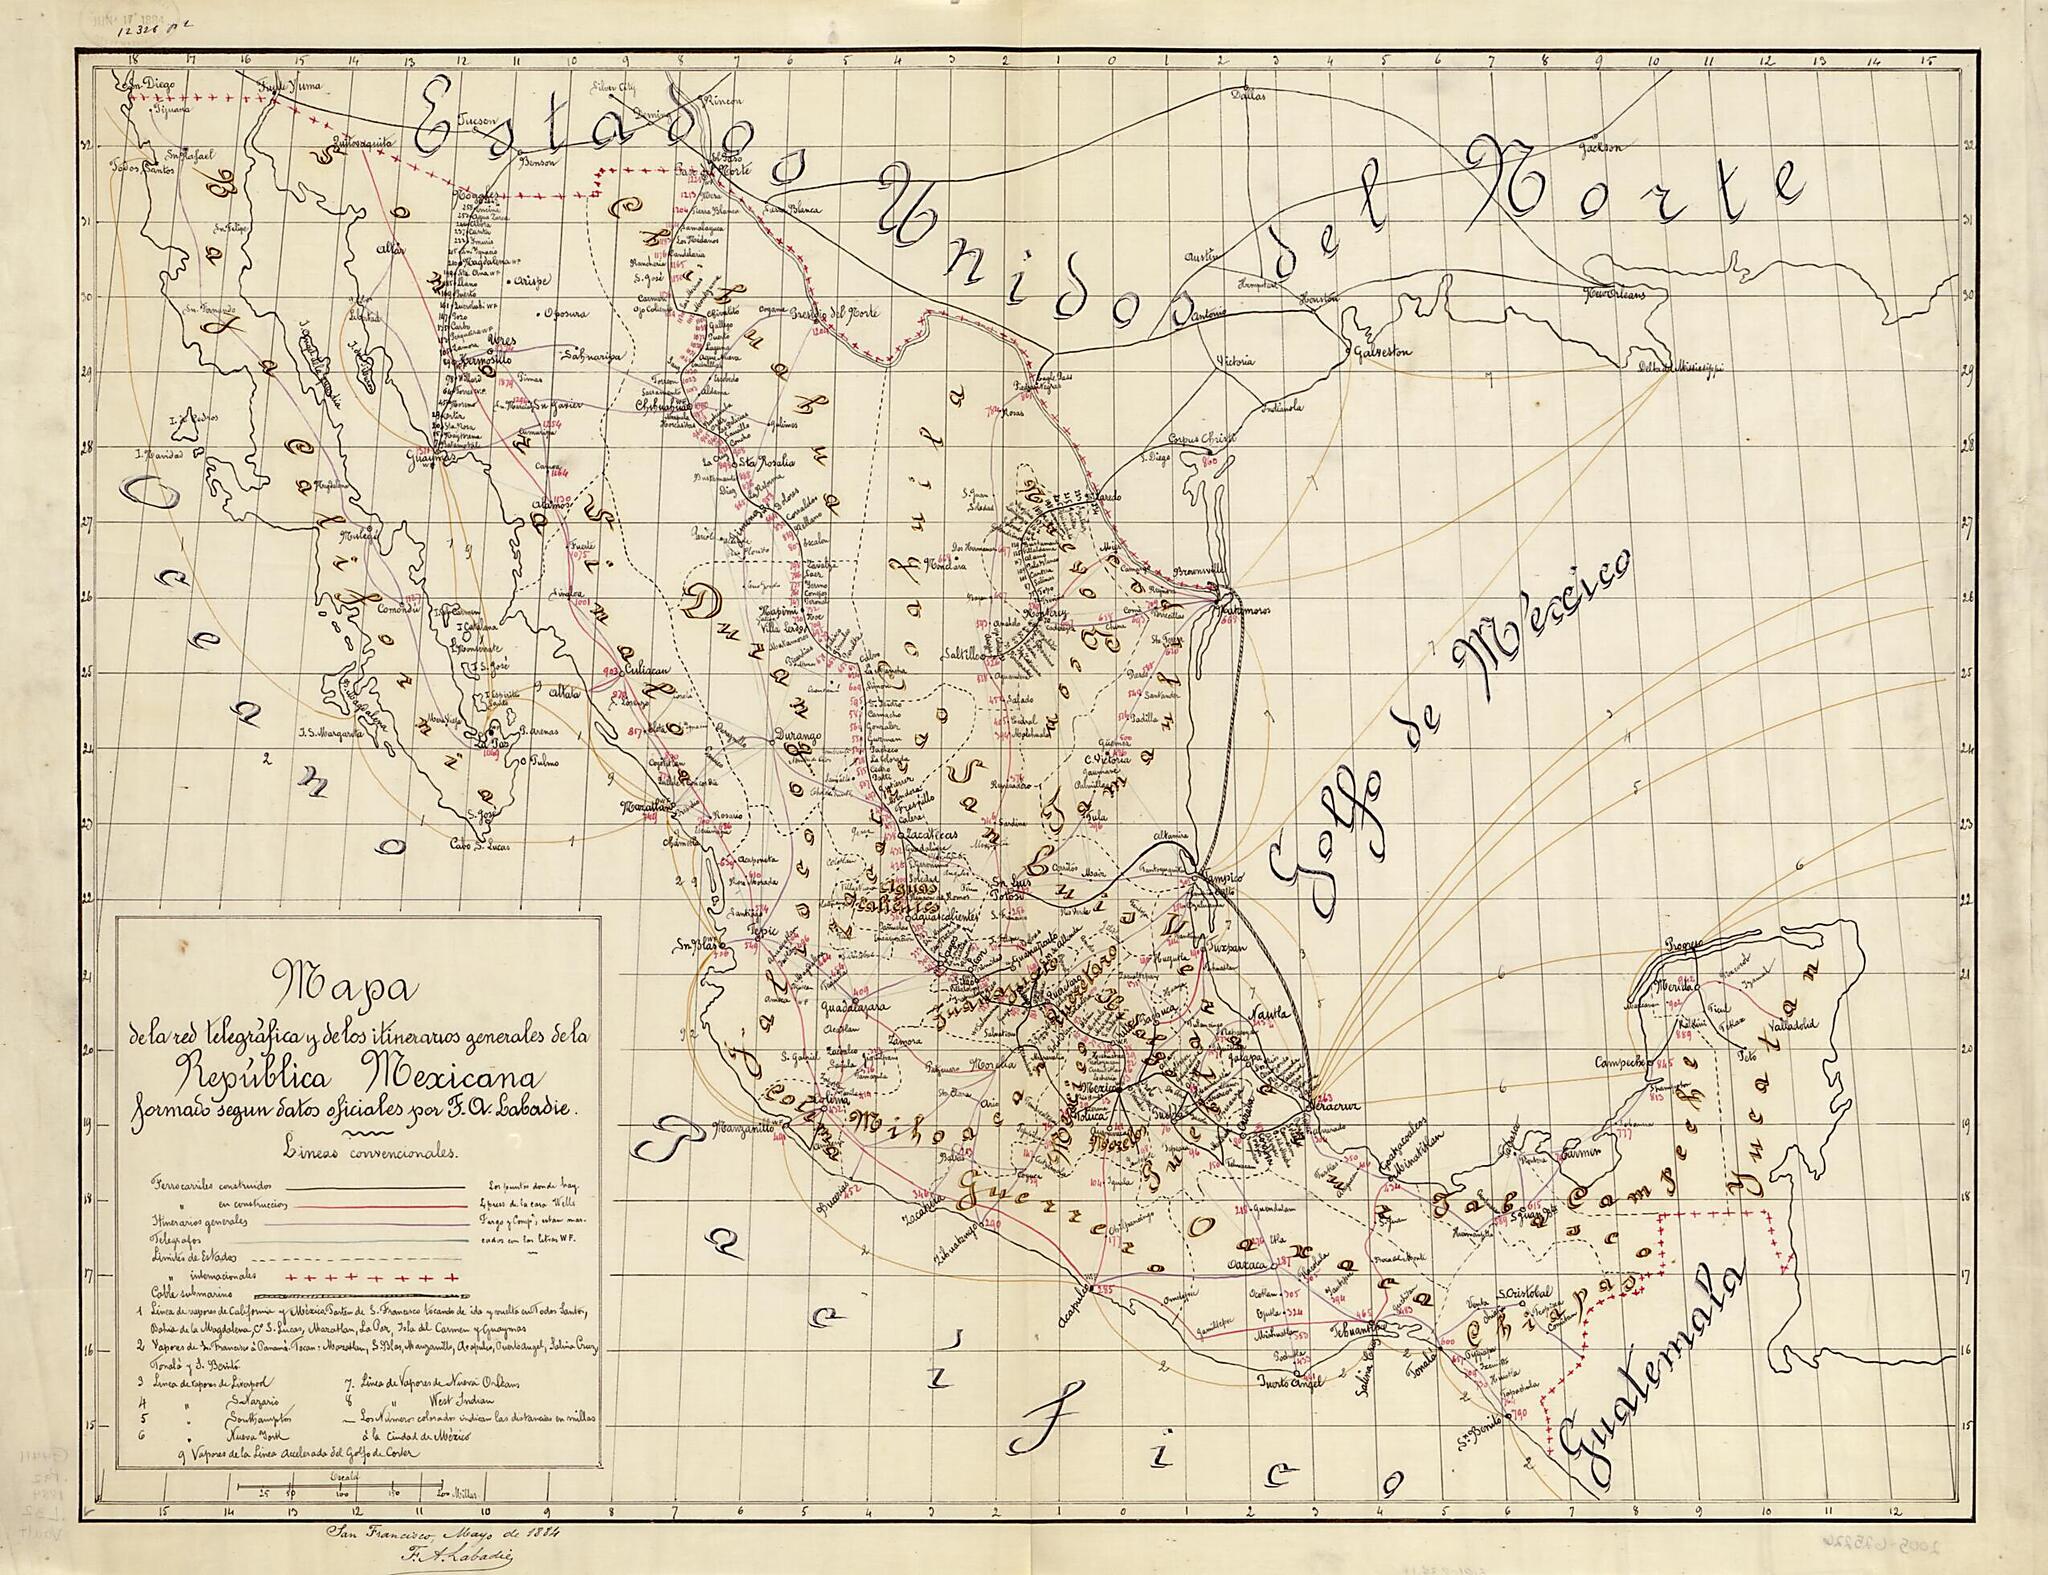 This old map of Mapa De La Red Telegráfica Y De Los Itinerarios Generales De La República Mexicana : Formado Segun Datos Officiales from 1884 was created by F. A. (Felipe A.) Labadie in 1884